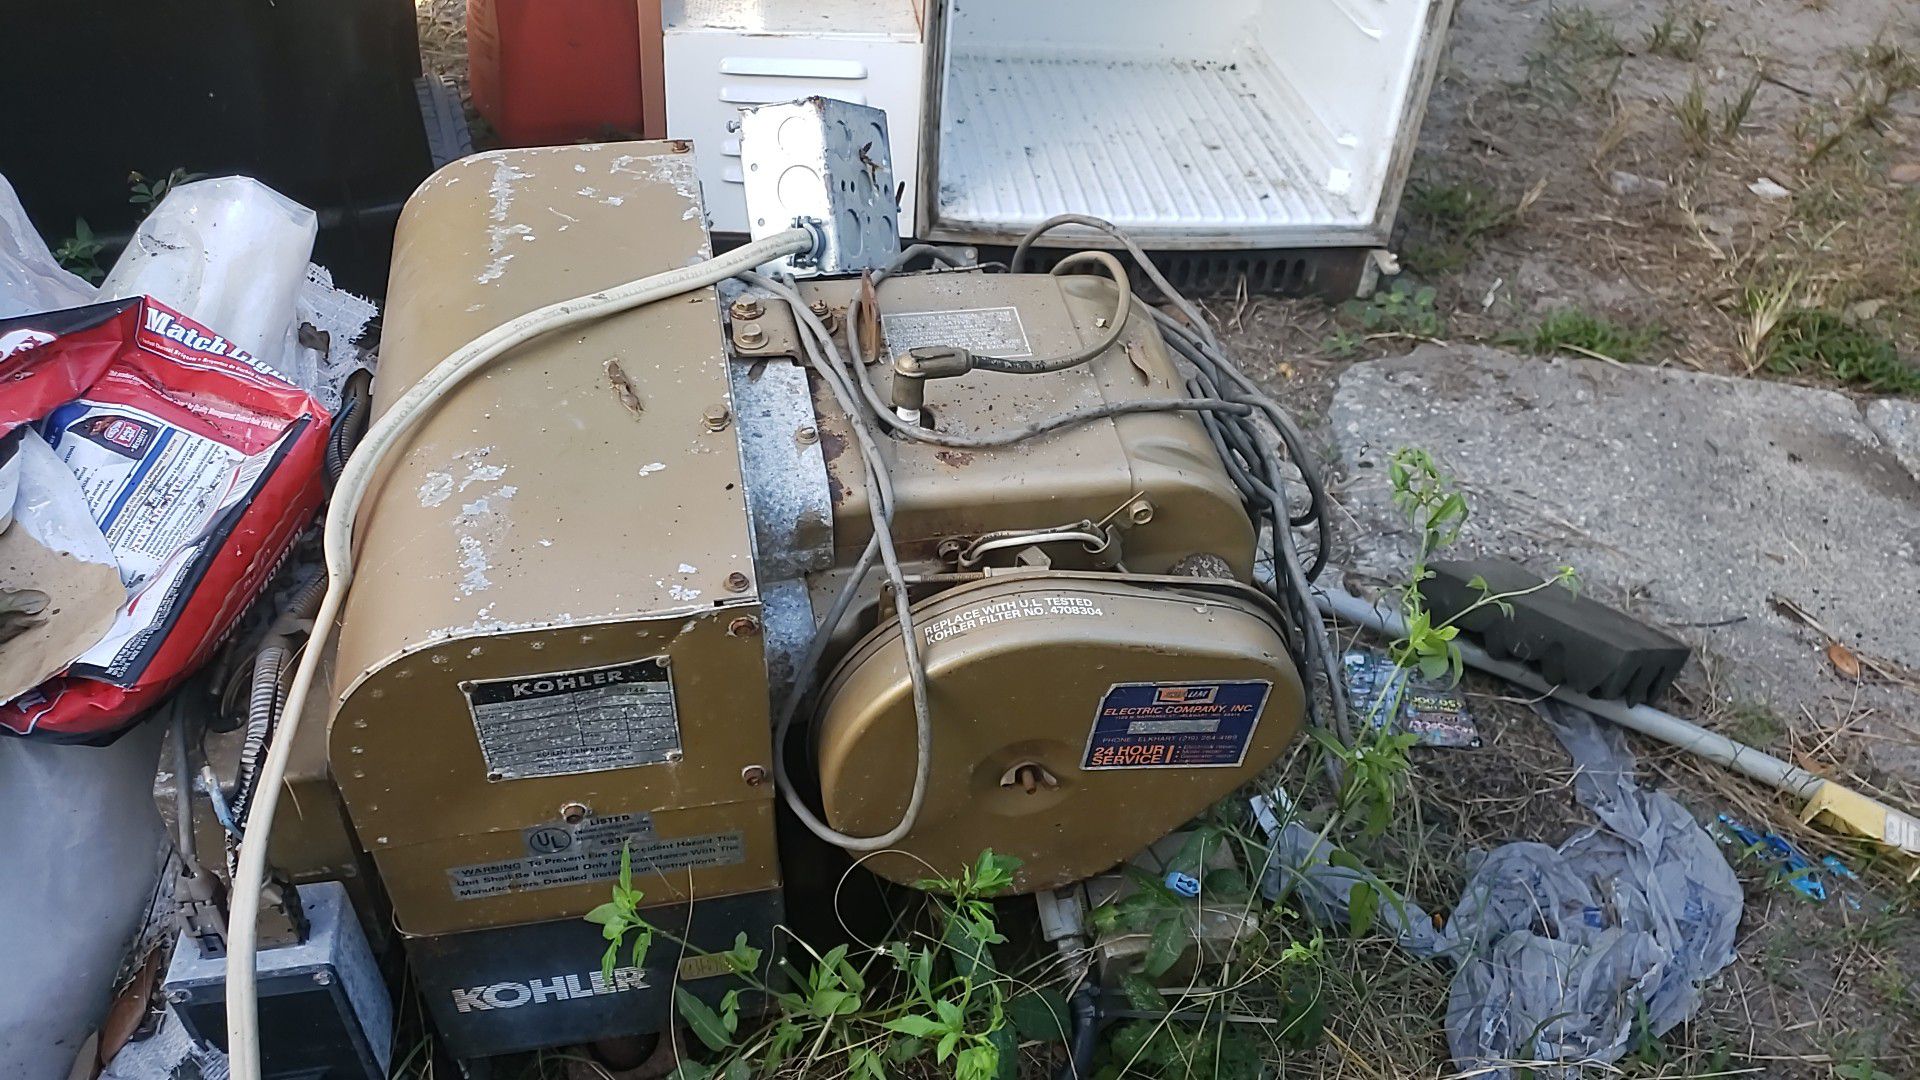 Kohler 4500 generator